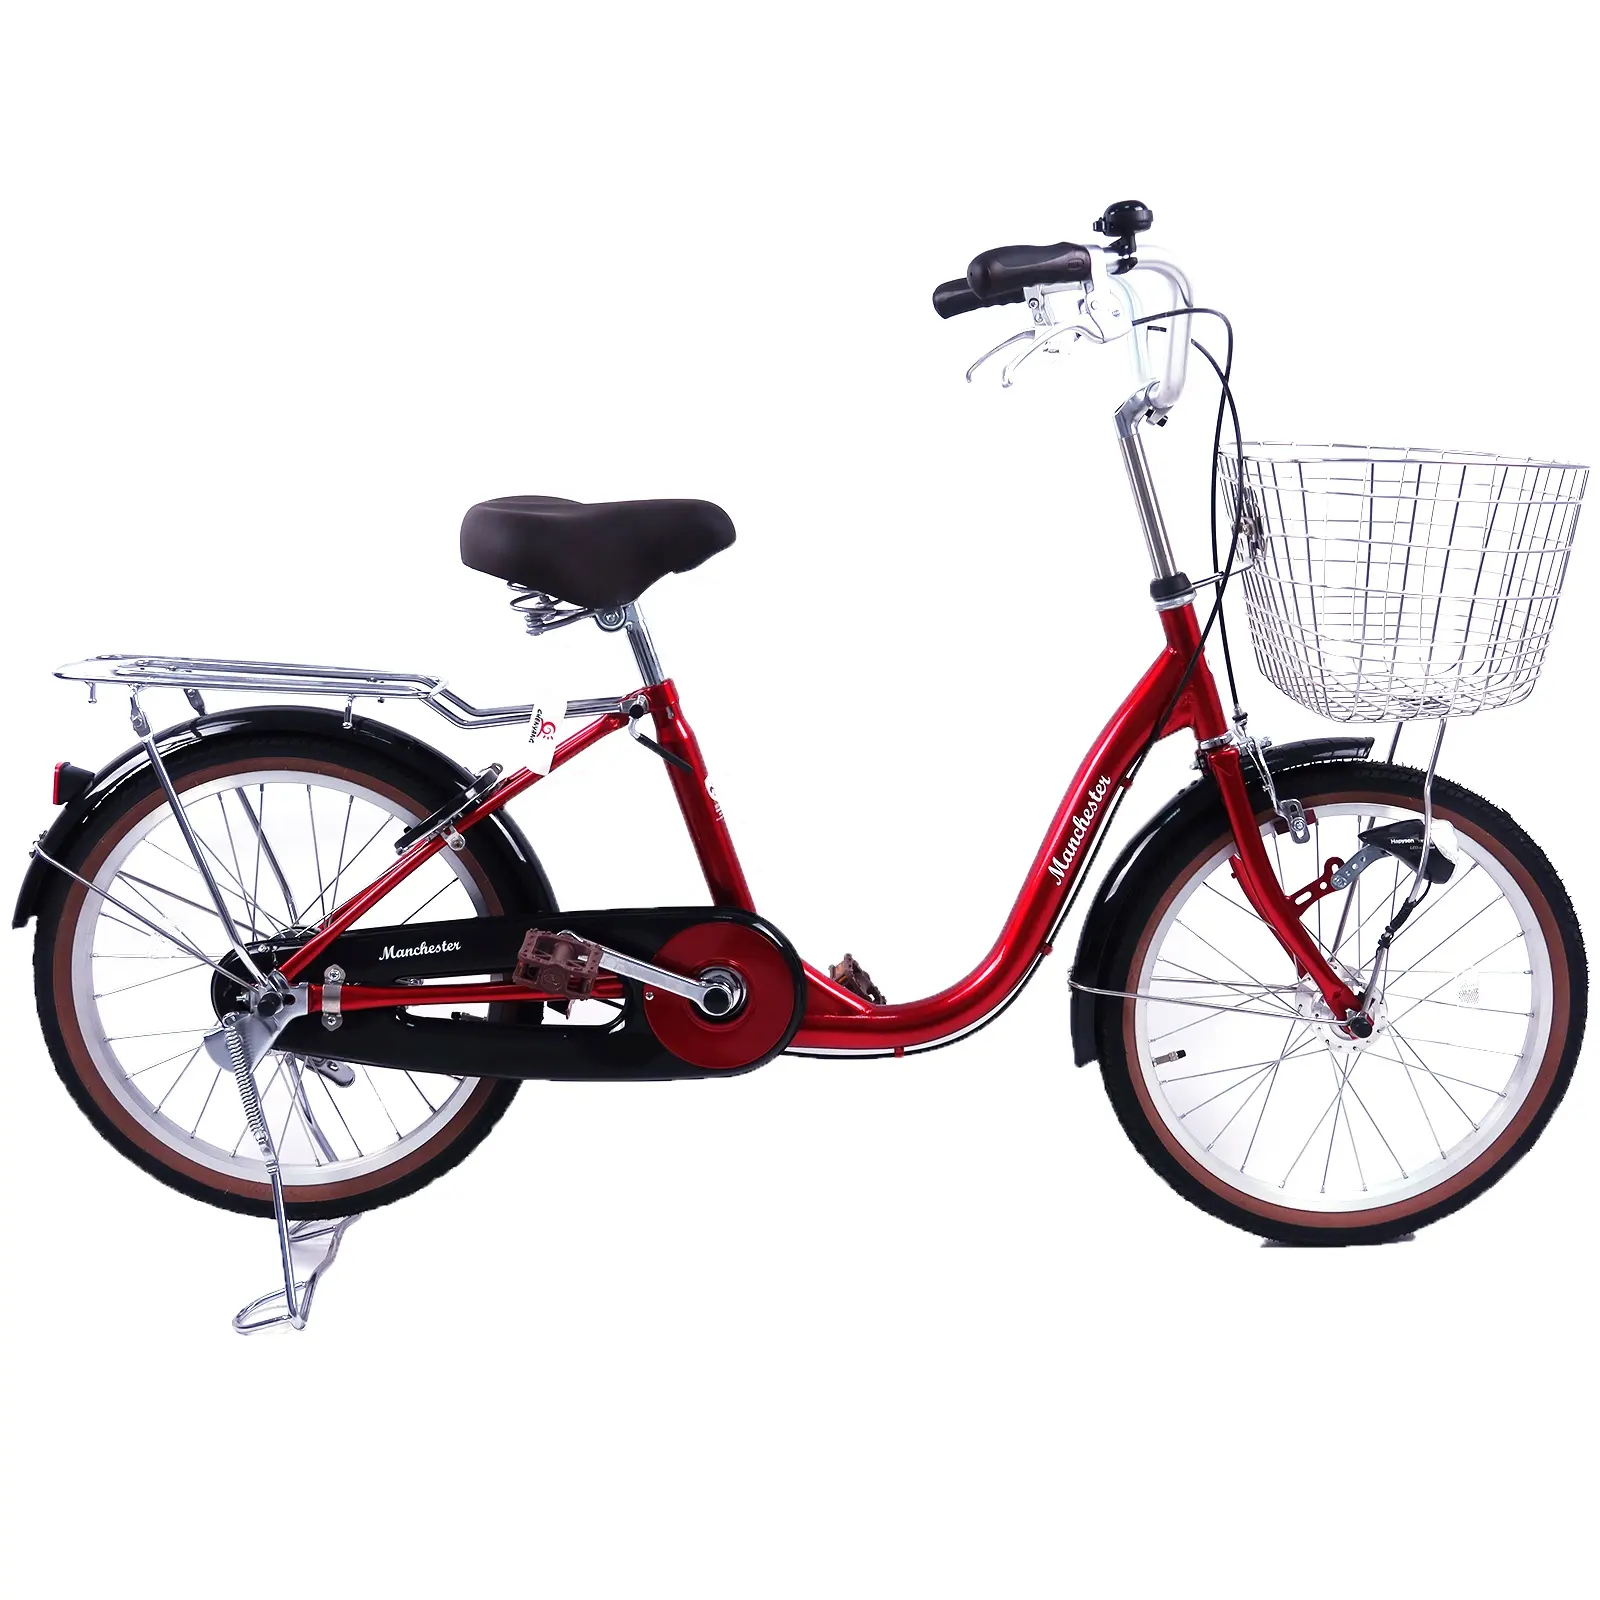 Bicicleta urbana de lazer 20\" com luz automática para deslocamentos e passeios de lazer